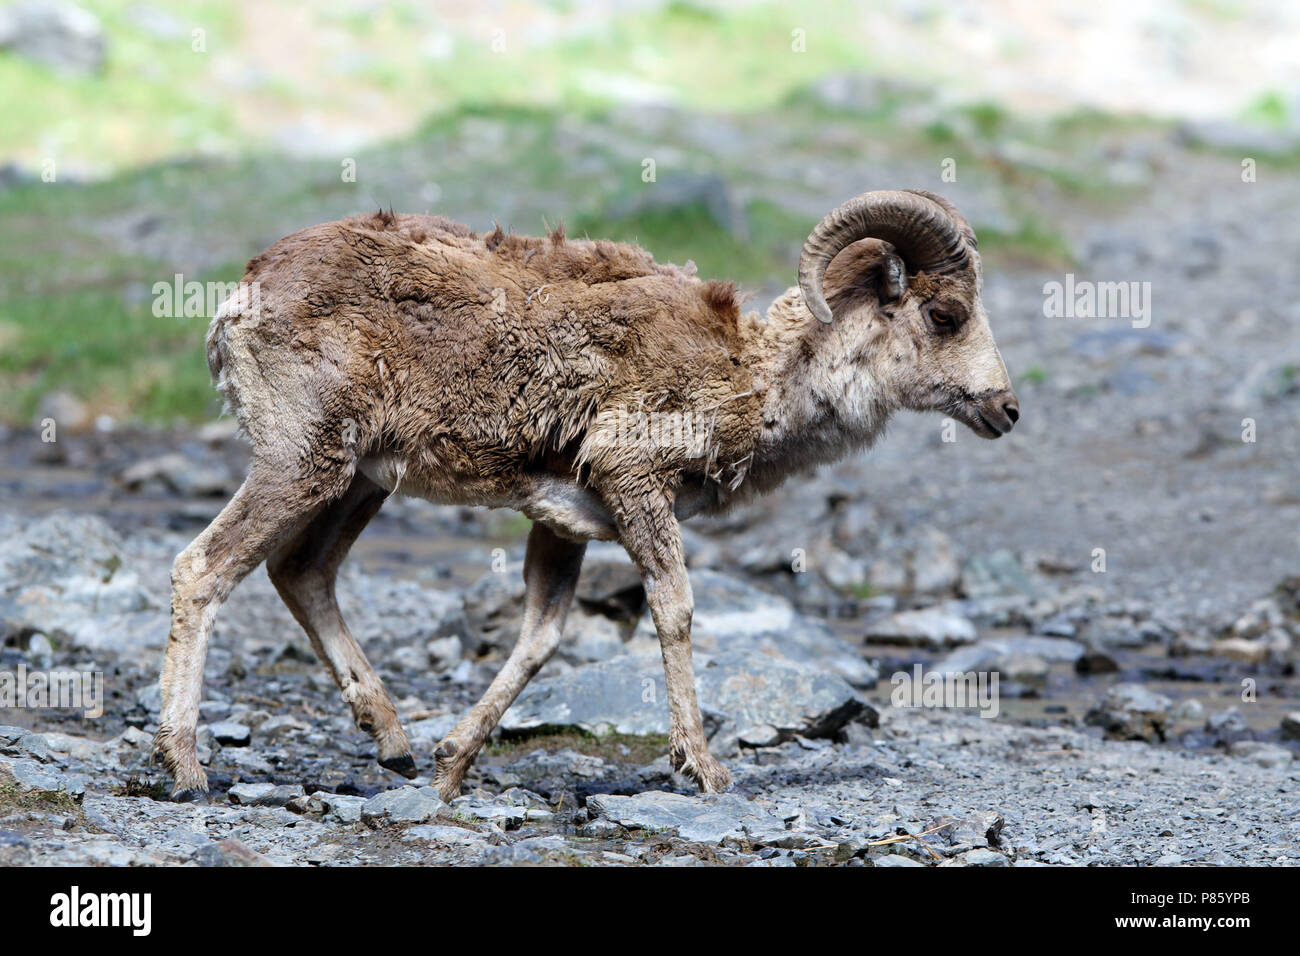 L'argali, ou le mountain sheep (Ovis ammon) les espèces sauvages est un mouton qui erre dans les montagnes de l'Asie centrale (Himalaya, Tibet, Altay). Banque D'Images